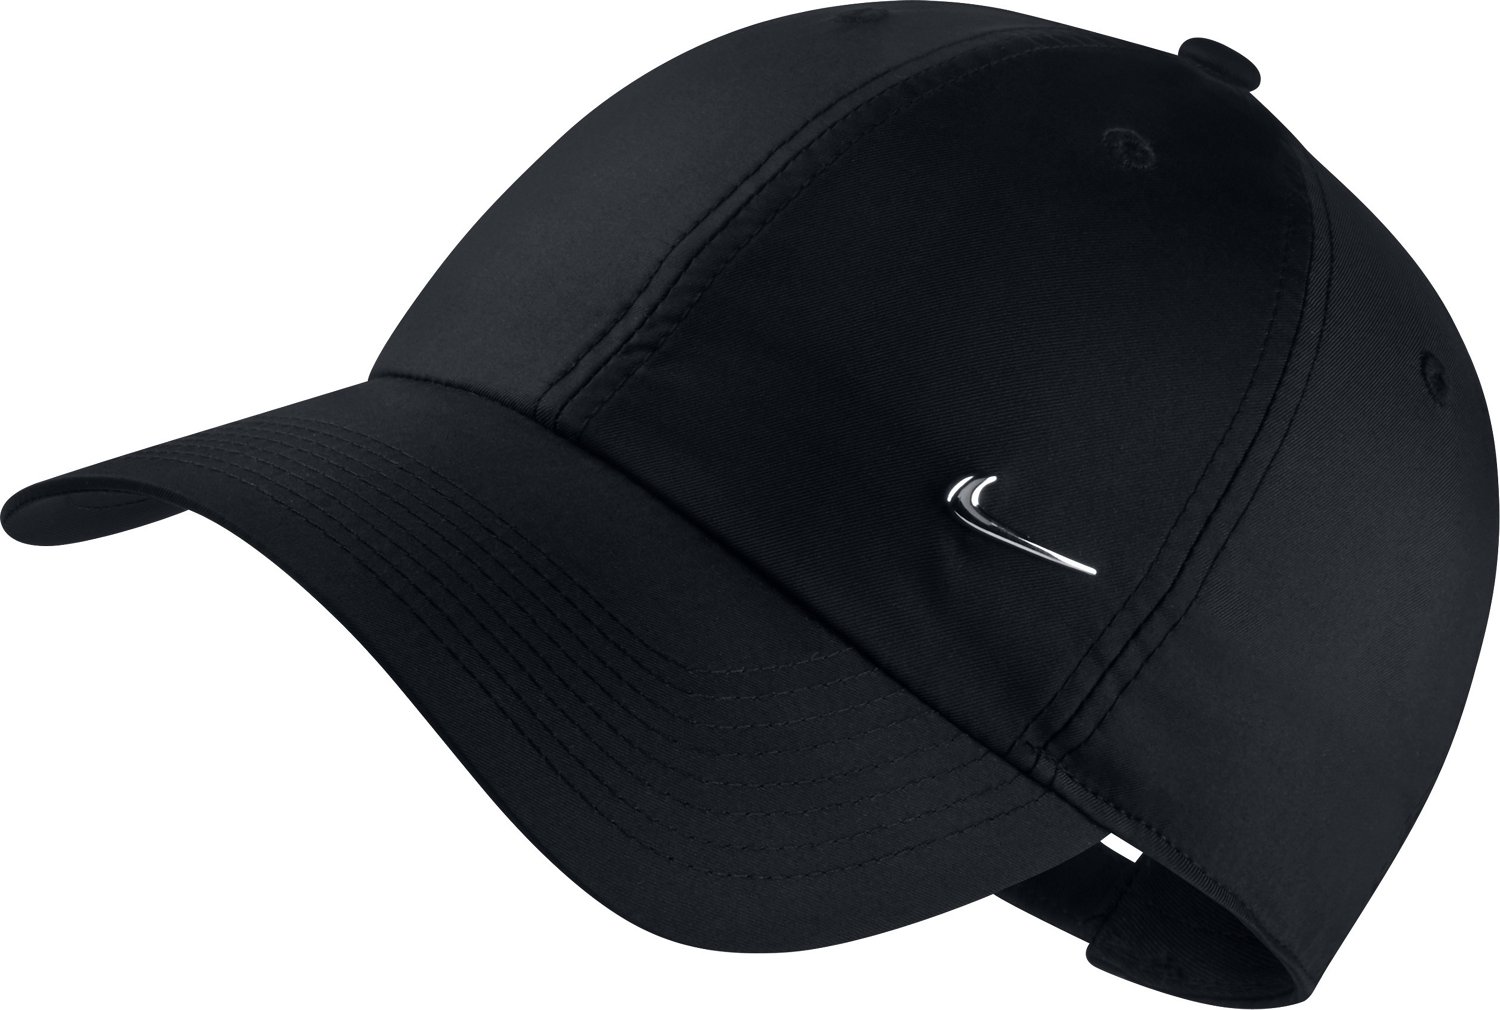 Nike Metal Swoosh Cap Black